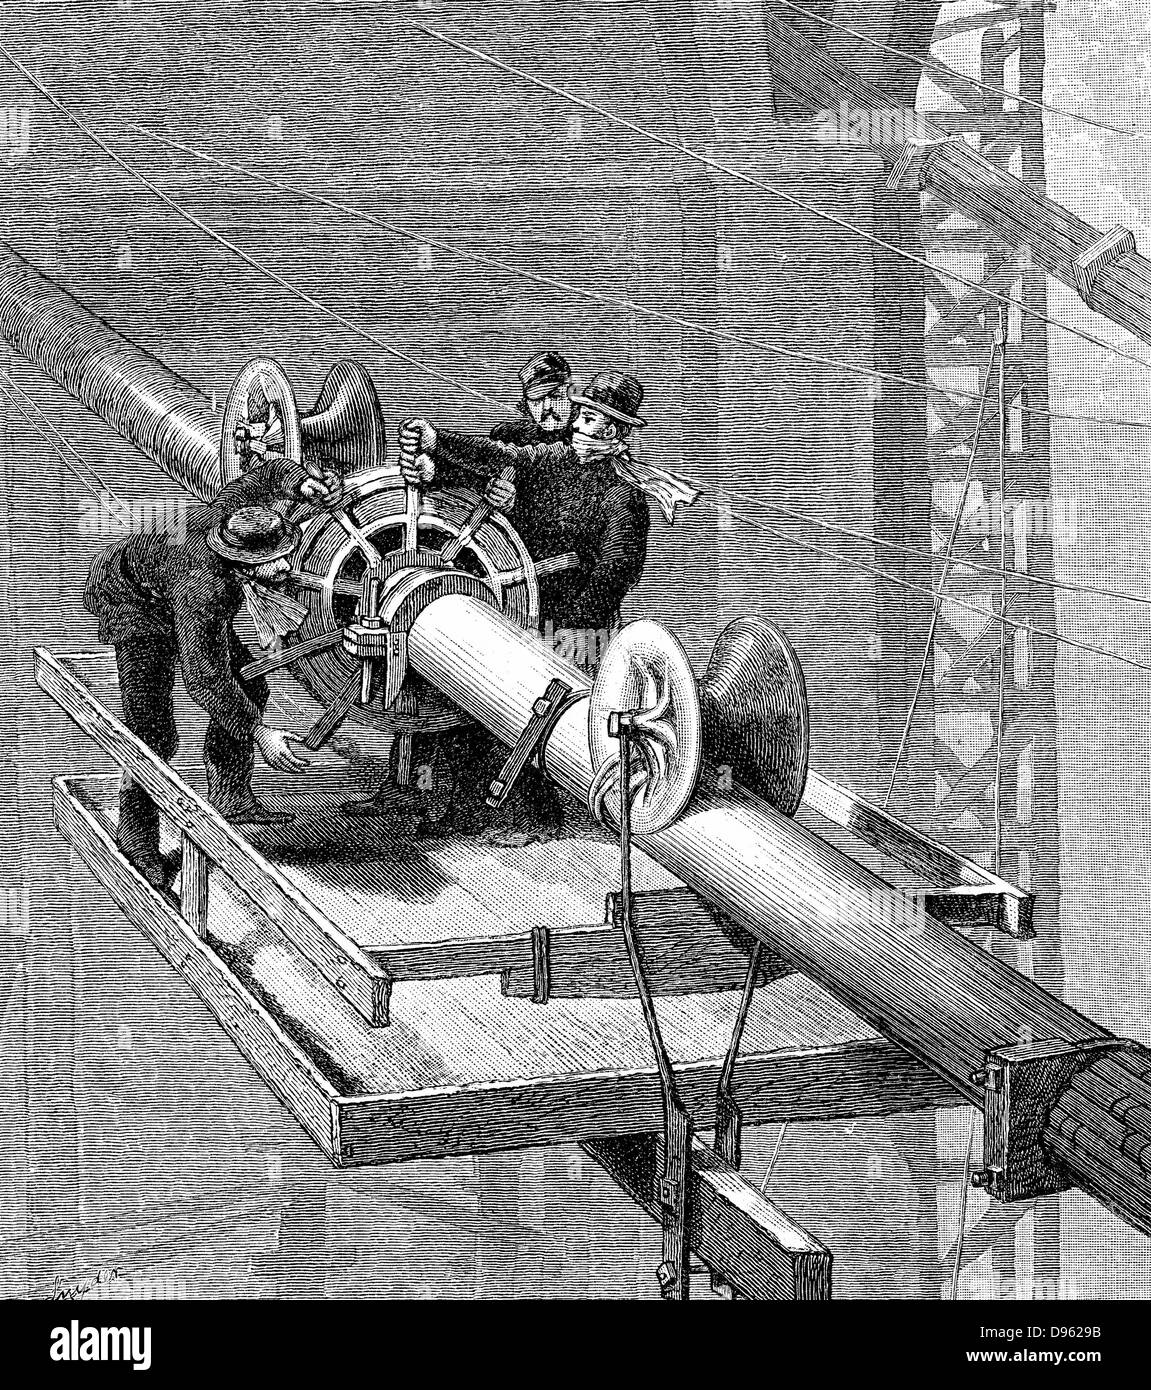 Brooklyn Suspension Bridge, New York: Kabel wickelt sich um die Seilzüge zur Aufhängung, die jeweils mehr als 5.000 einzelne Strähnen gemacht wurde. Holzstich veröffentlicht 1883, das Jahr, in dem die Brücke eröffnet. Konzipiert und von JA Roebling und sein Sohn WA Roebling gebaut. Stockfoto